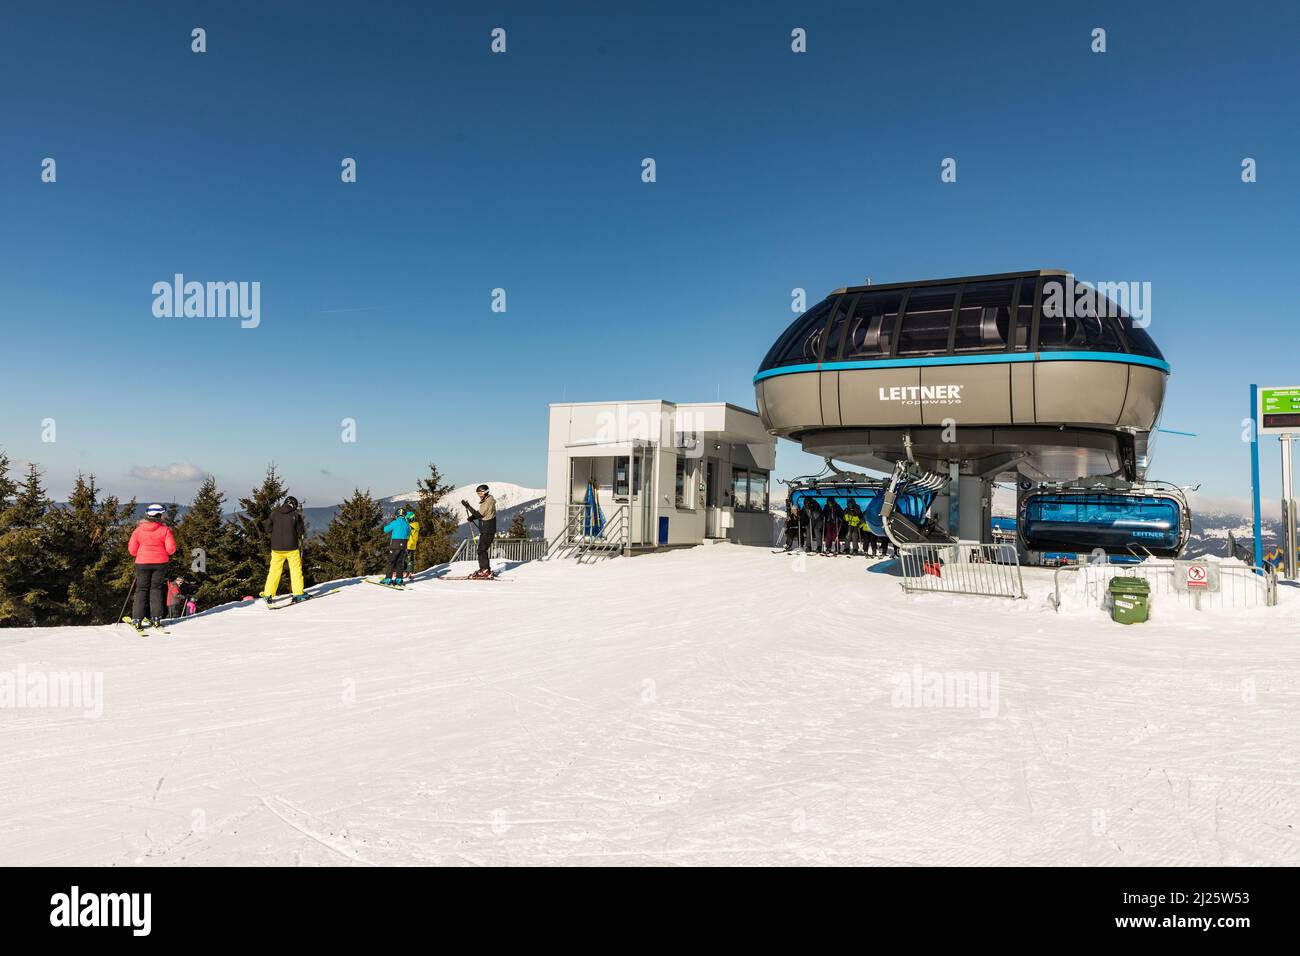 SPINDLERUV MLYN, REPUBBLICA CECA - 10 marzo 2022: Aereo, la stazione più alta della funivia. Hromovka in montagna Krkonose, il più popolare sci ceco Foto Stock